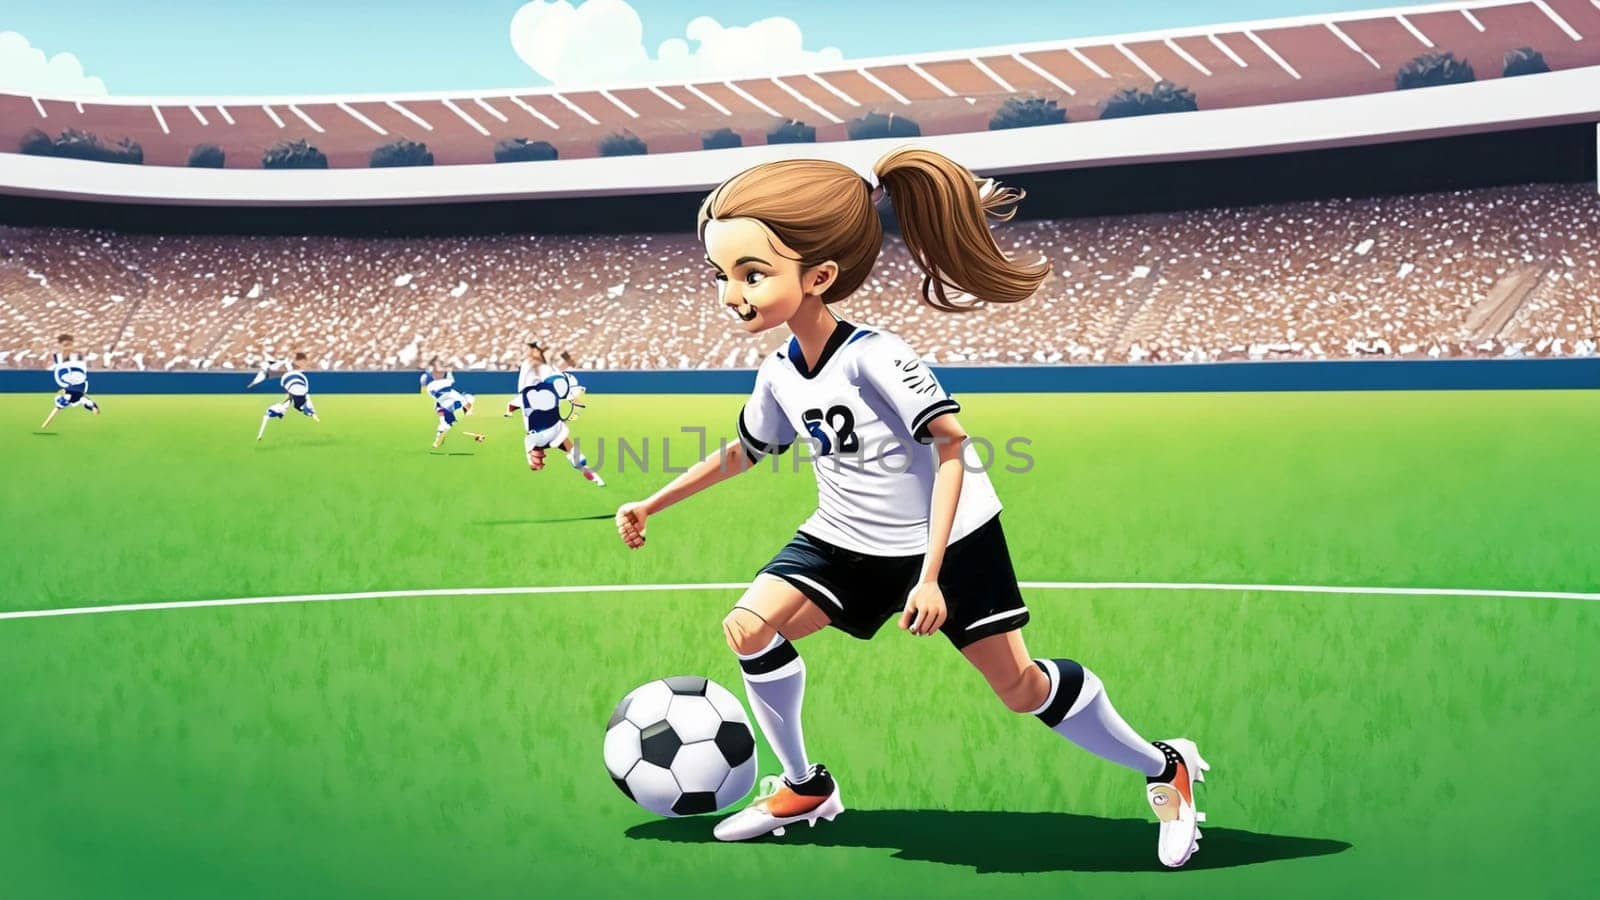 Eine junge Fussballspielerin in den Farben der deutschen Fussballnationalmannschaft spielt mit ihren Füssen einen Fussball. illustrationen im Cartoon Stil auf Sport stadions hintergrund für Kinder High quality illustration